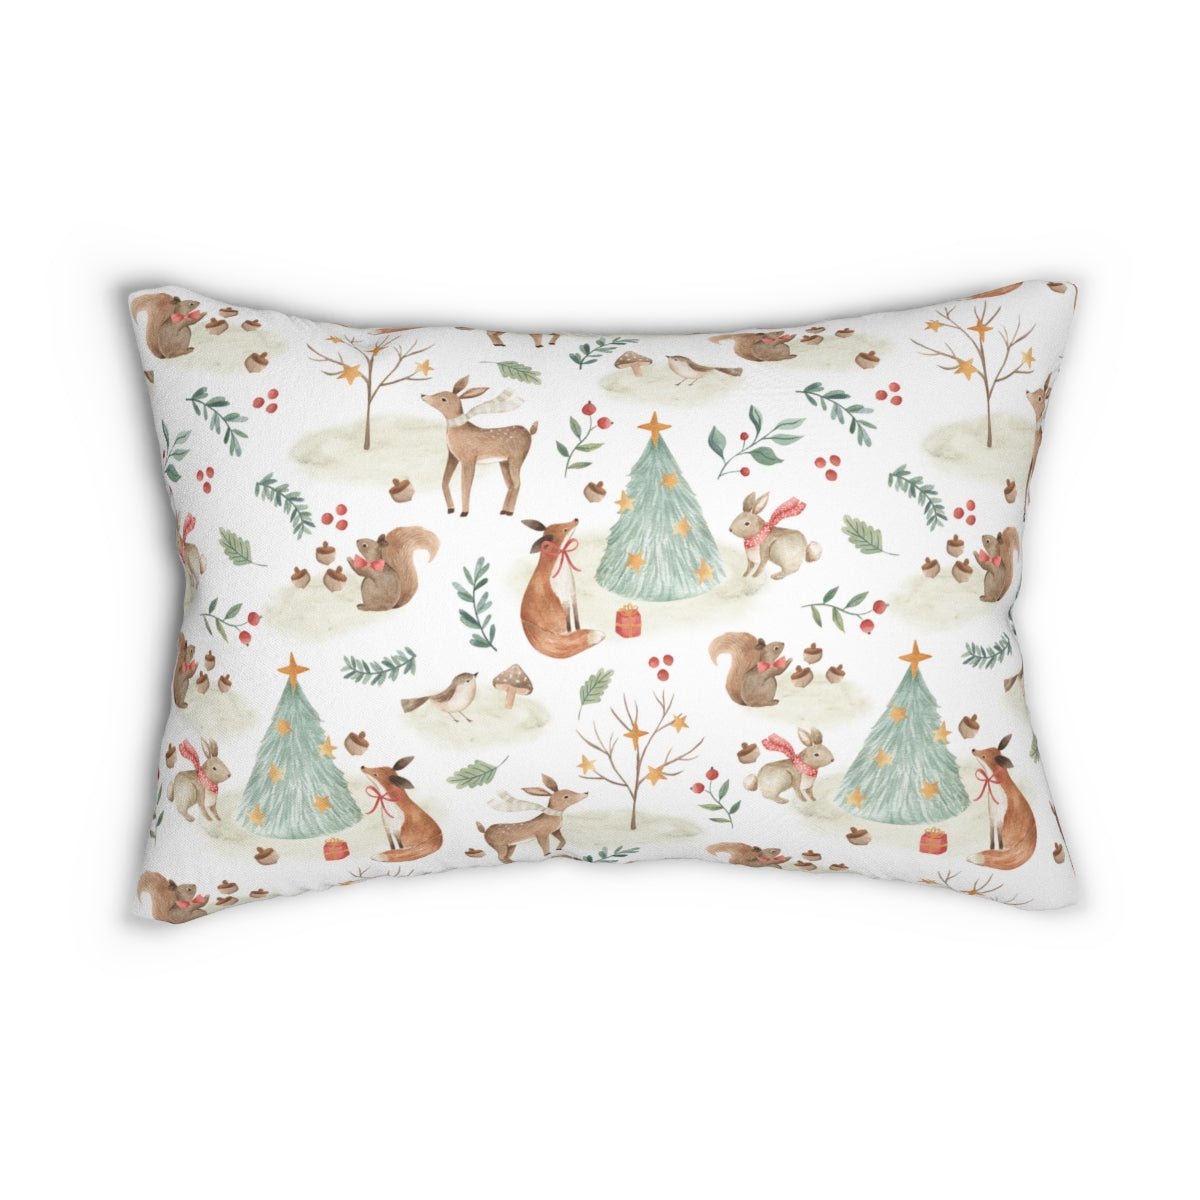 Christmas Woodland Animals Spun Polyester Lumbar Pillow - Puffin Lime